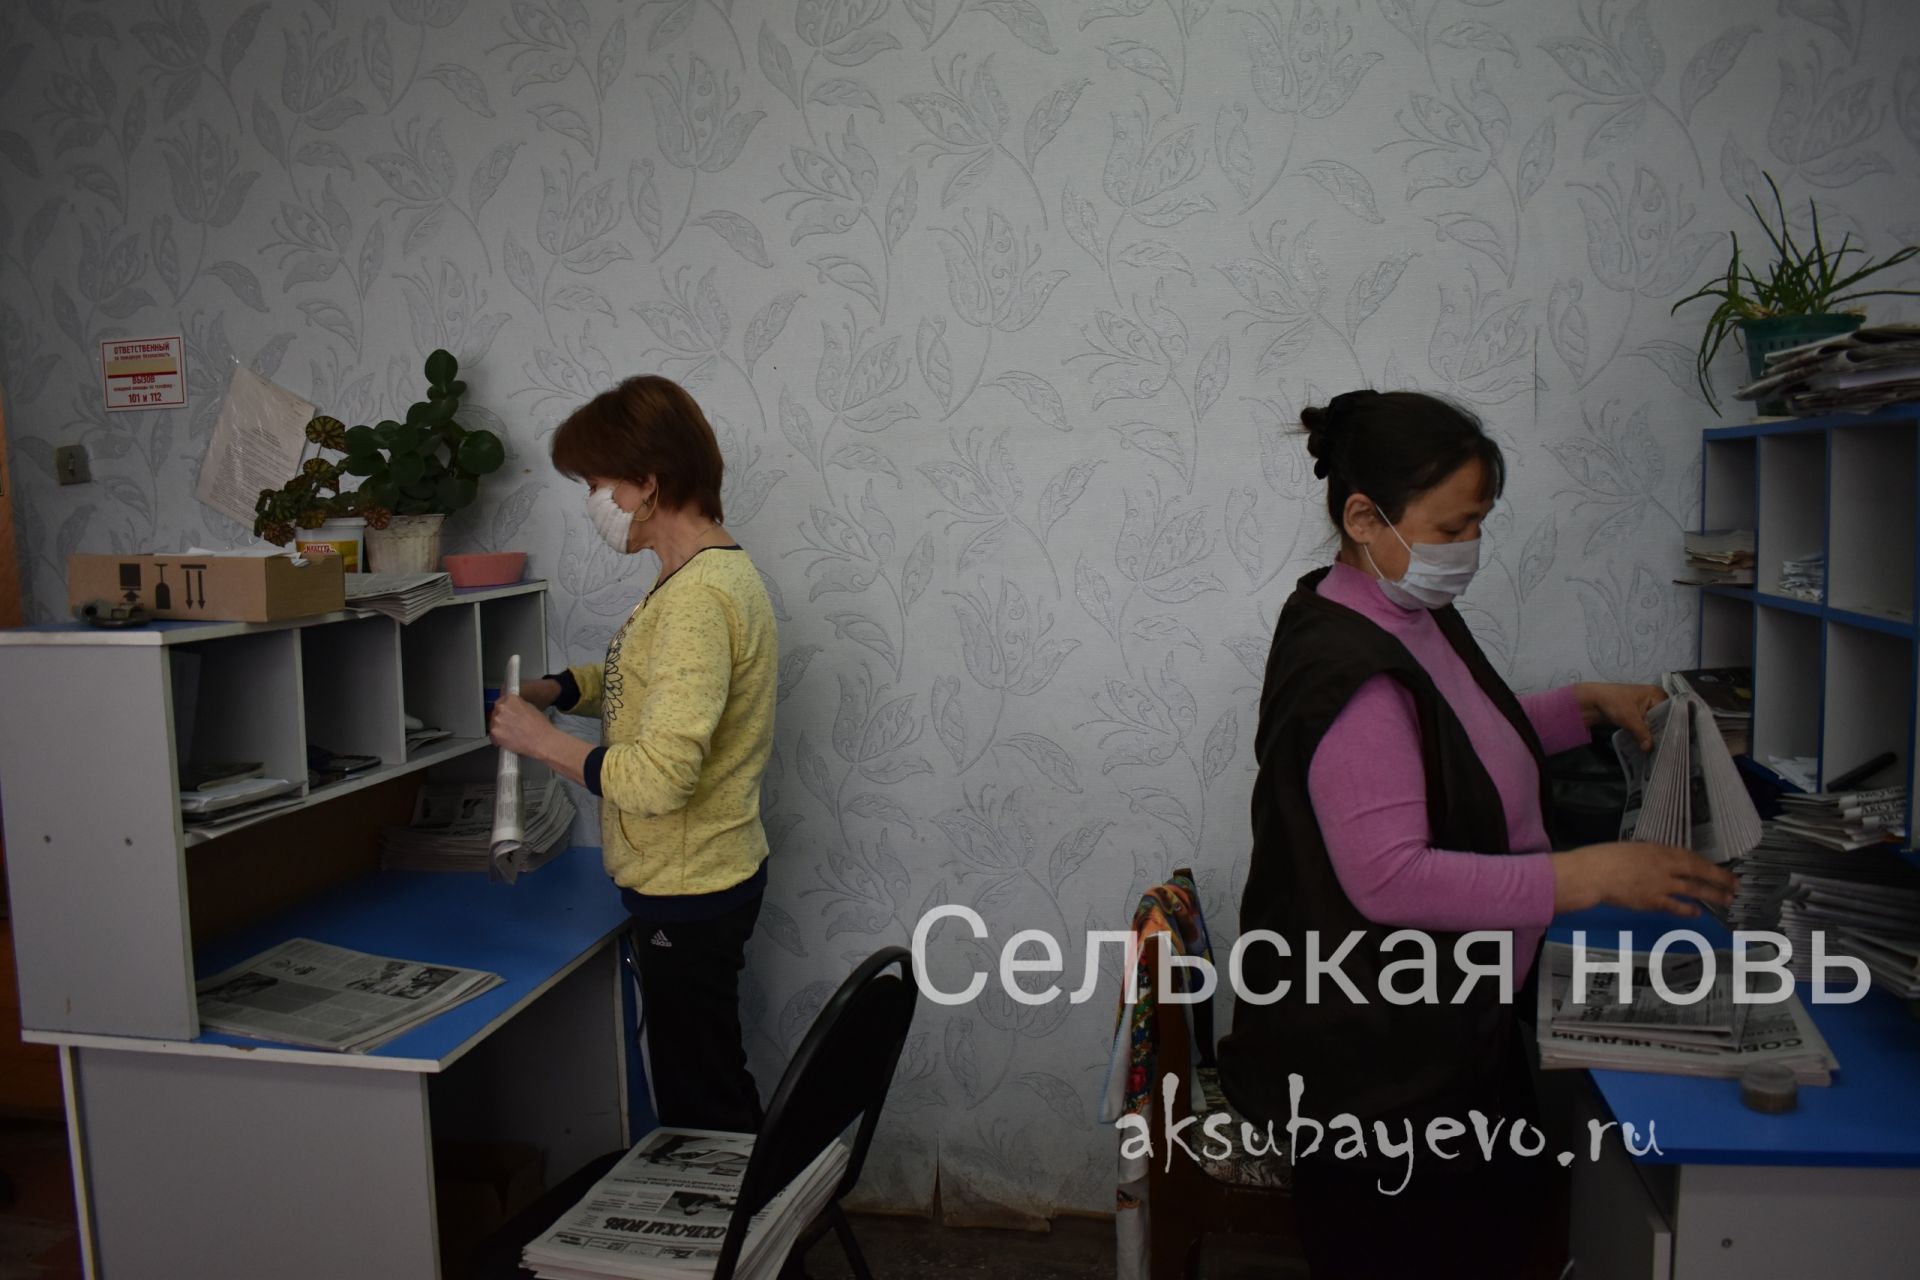 Аксубаевские почтальоны помогают редакции «Сельской нови» доставлять газеты по райцентру&nbsp;